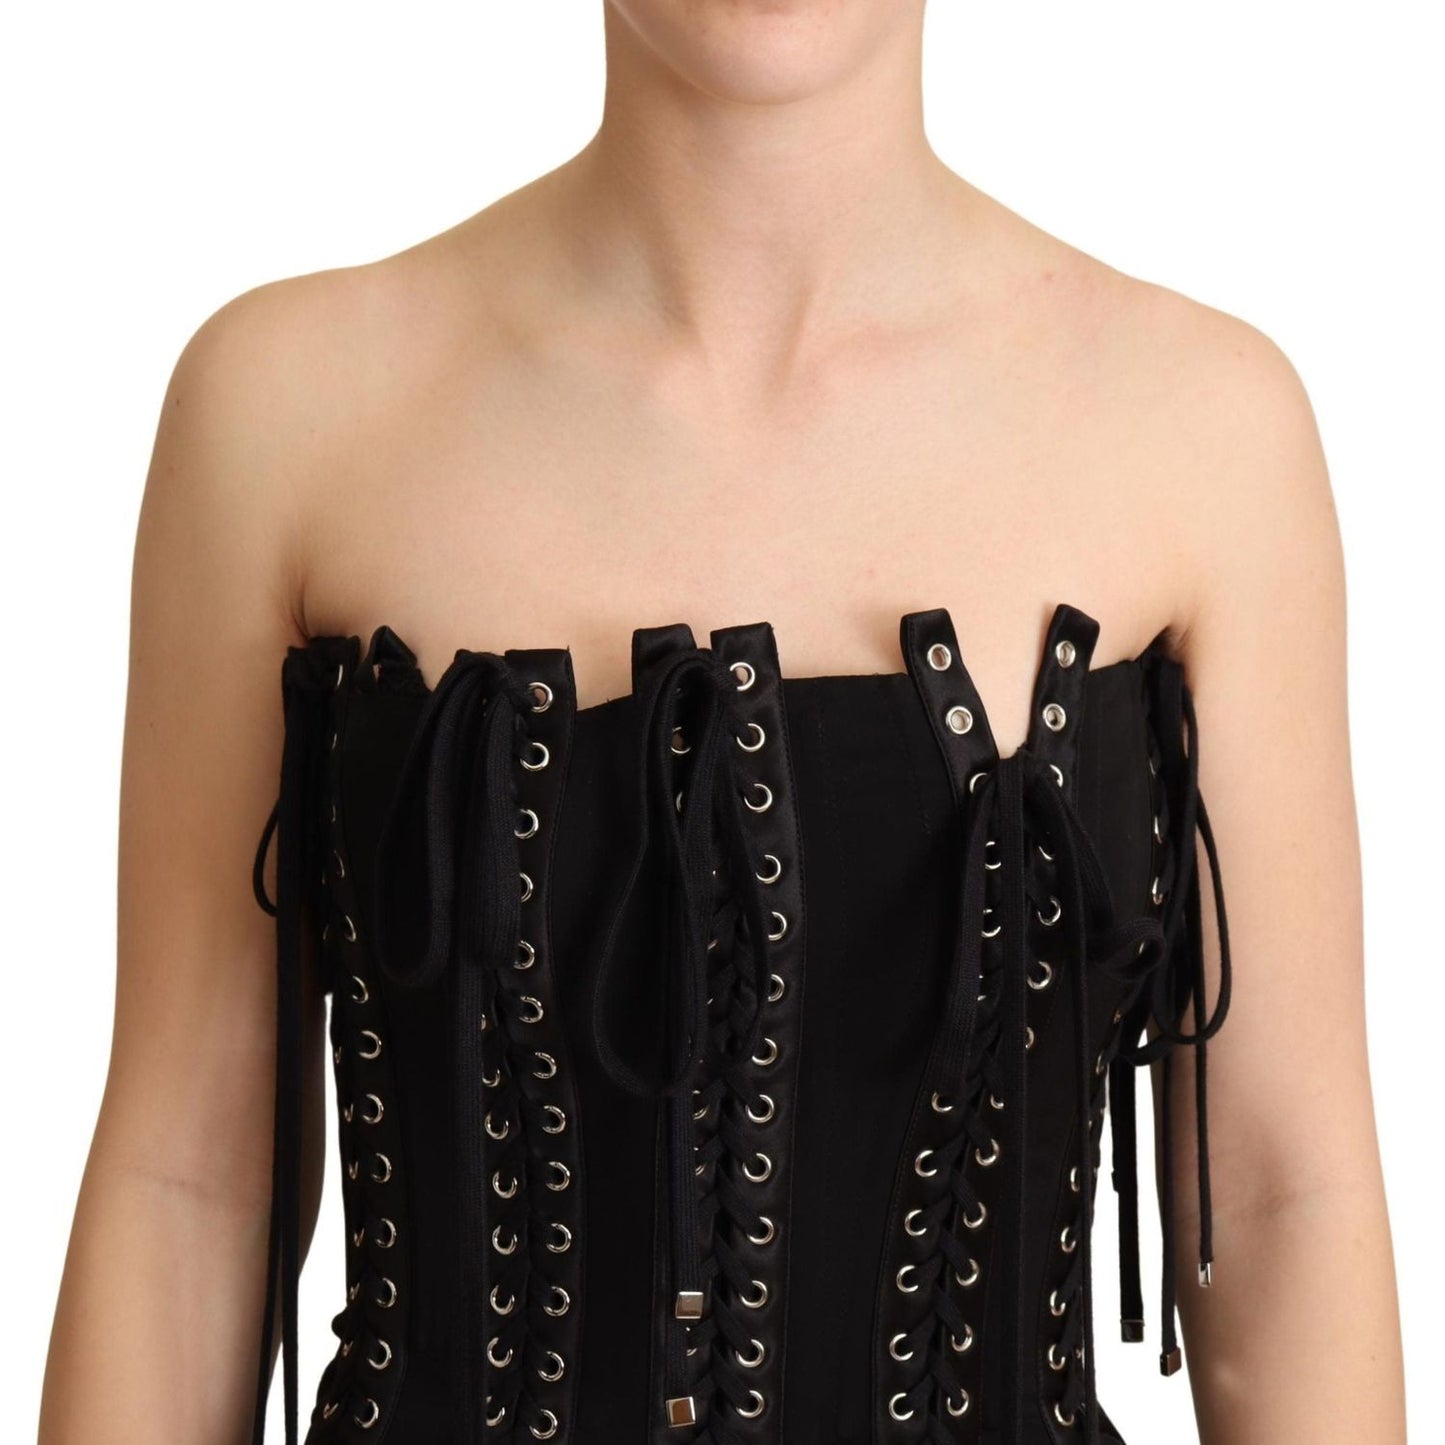 Dolce & Gabbana Elegant Sleeveless Lace-Up Midi Dress black-cady-sleeveless-lace-up-bodycon-dress